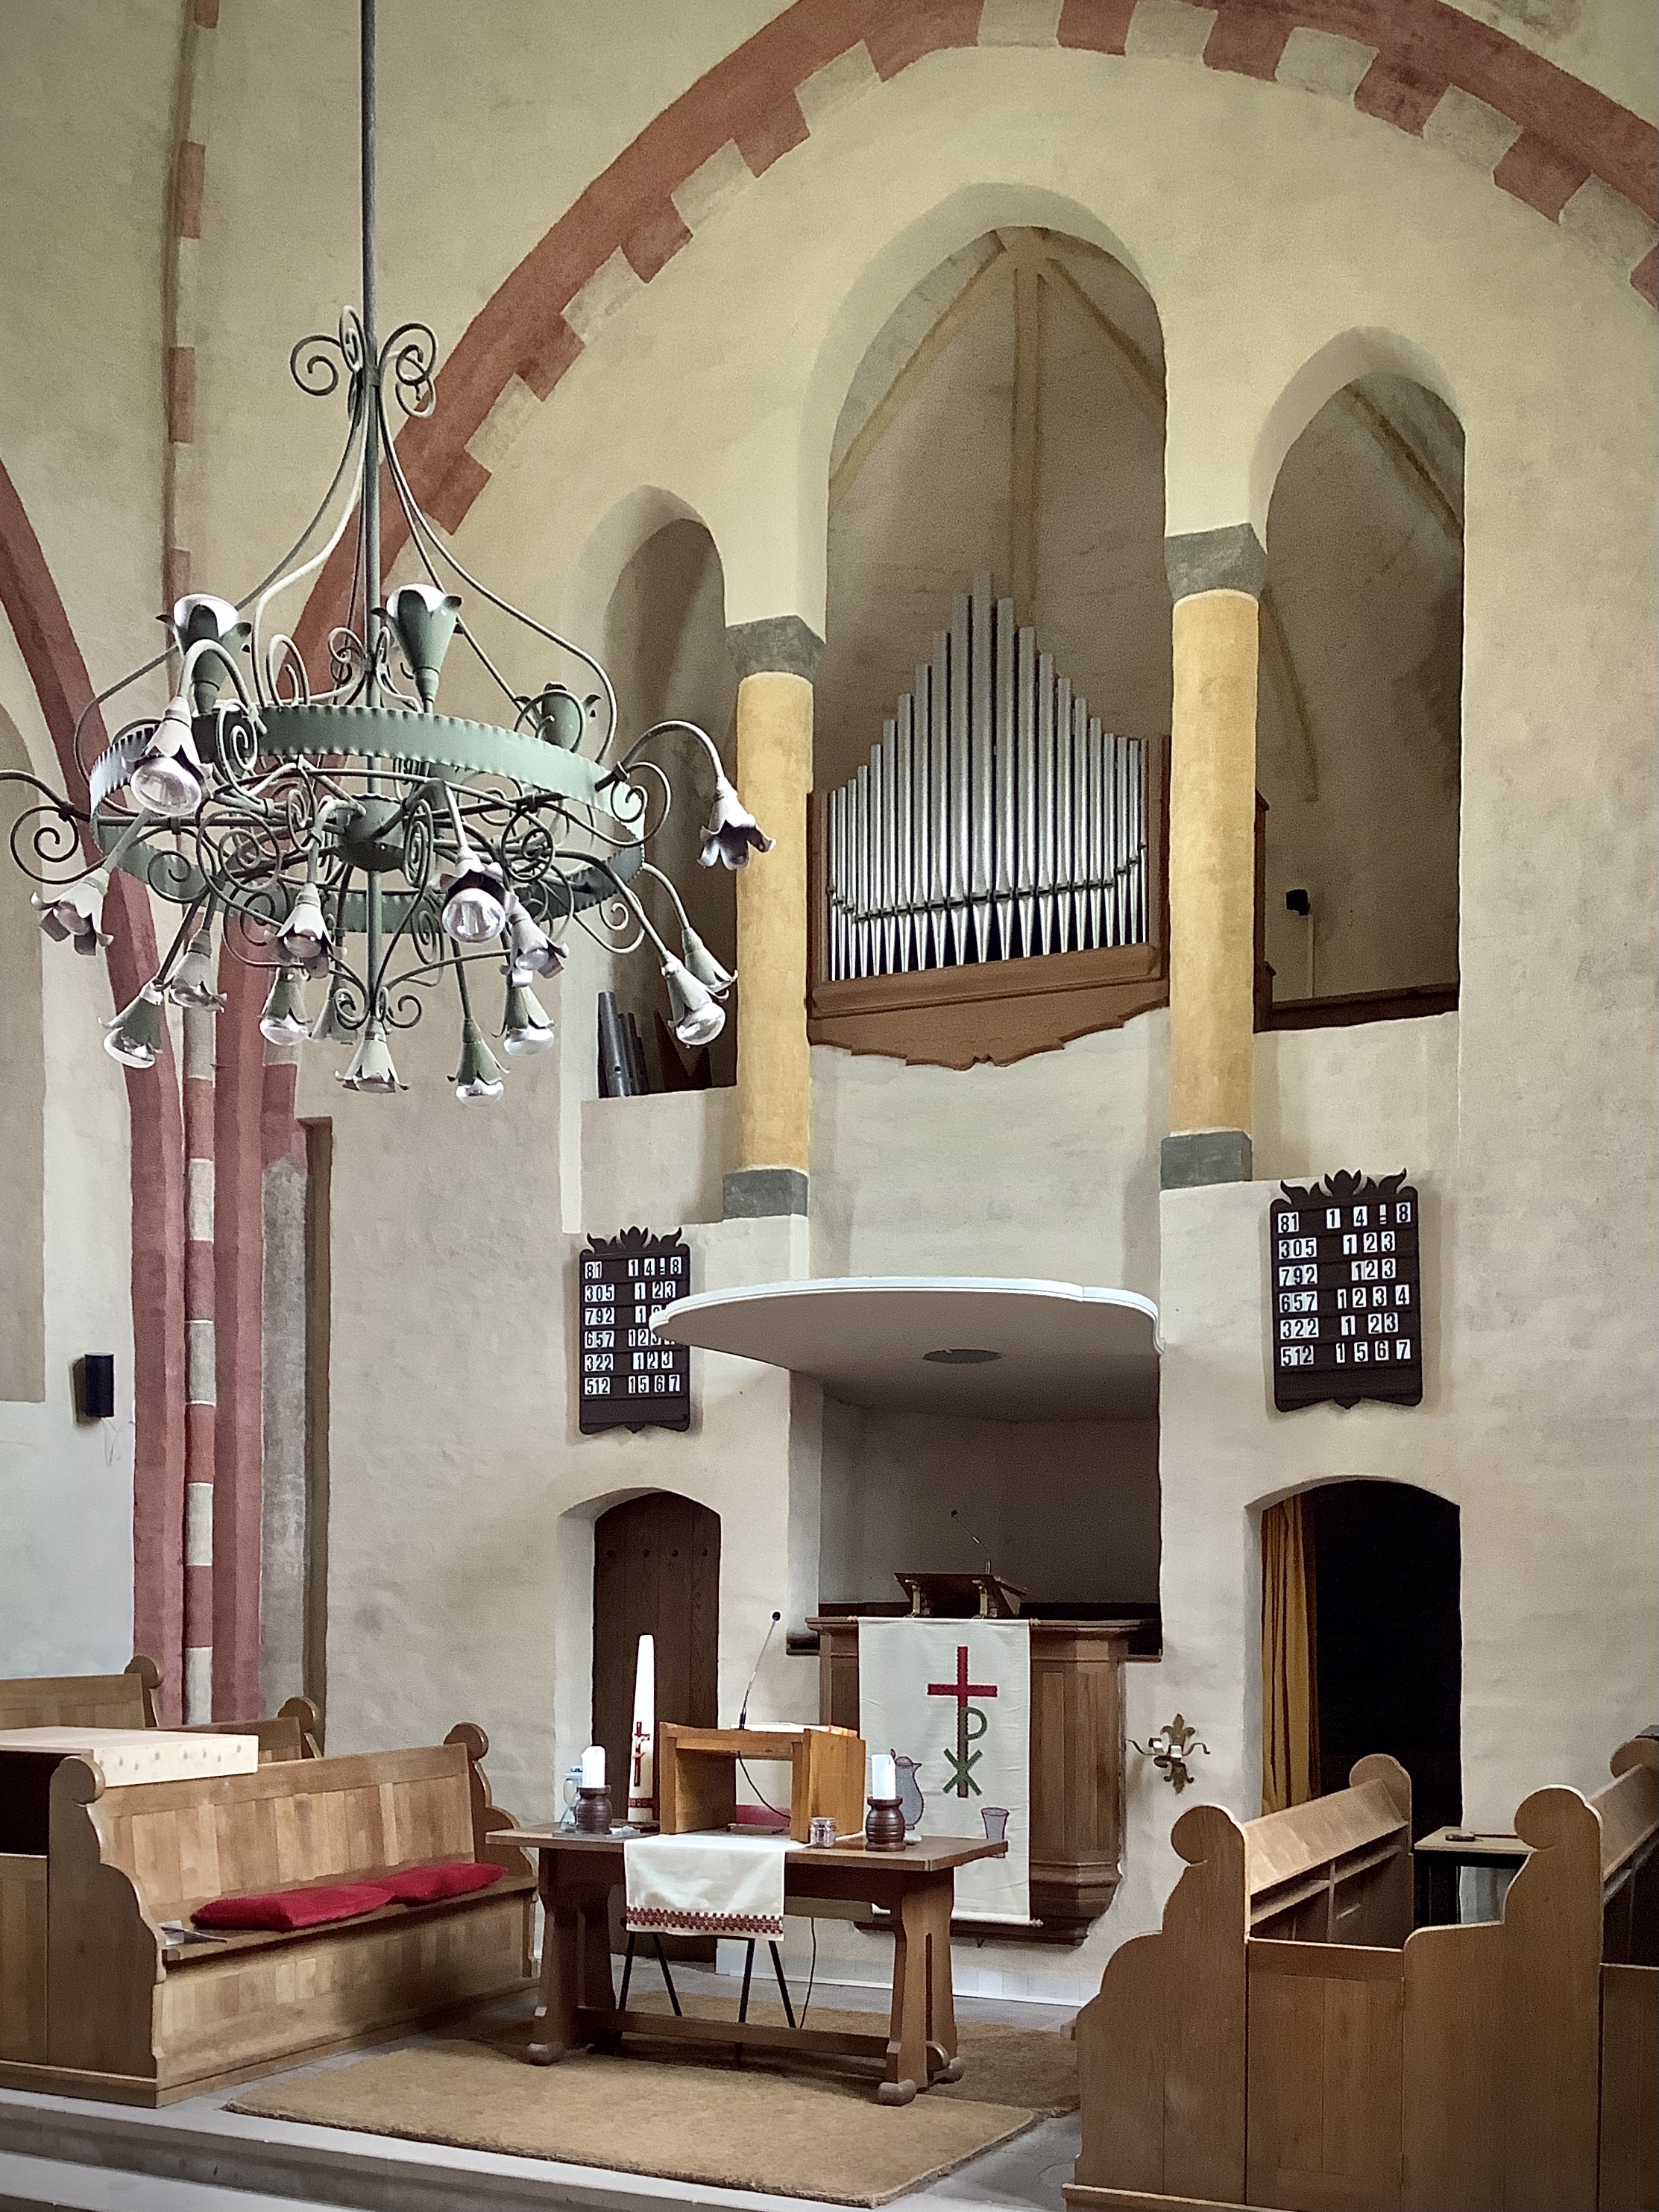 Interieur met orgel. Foto: ©Jur Kuipers, oktober 2022.